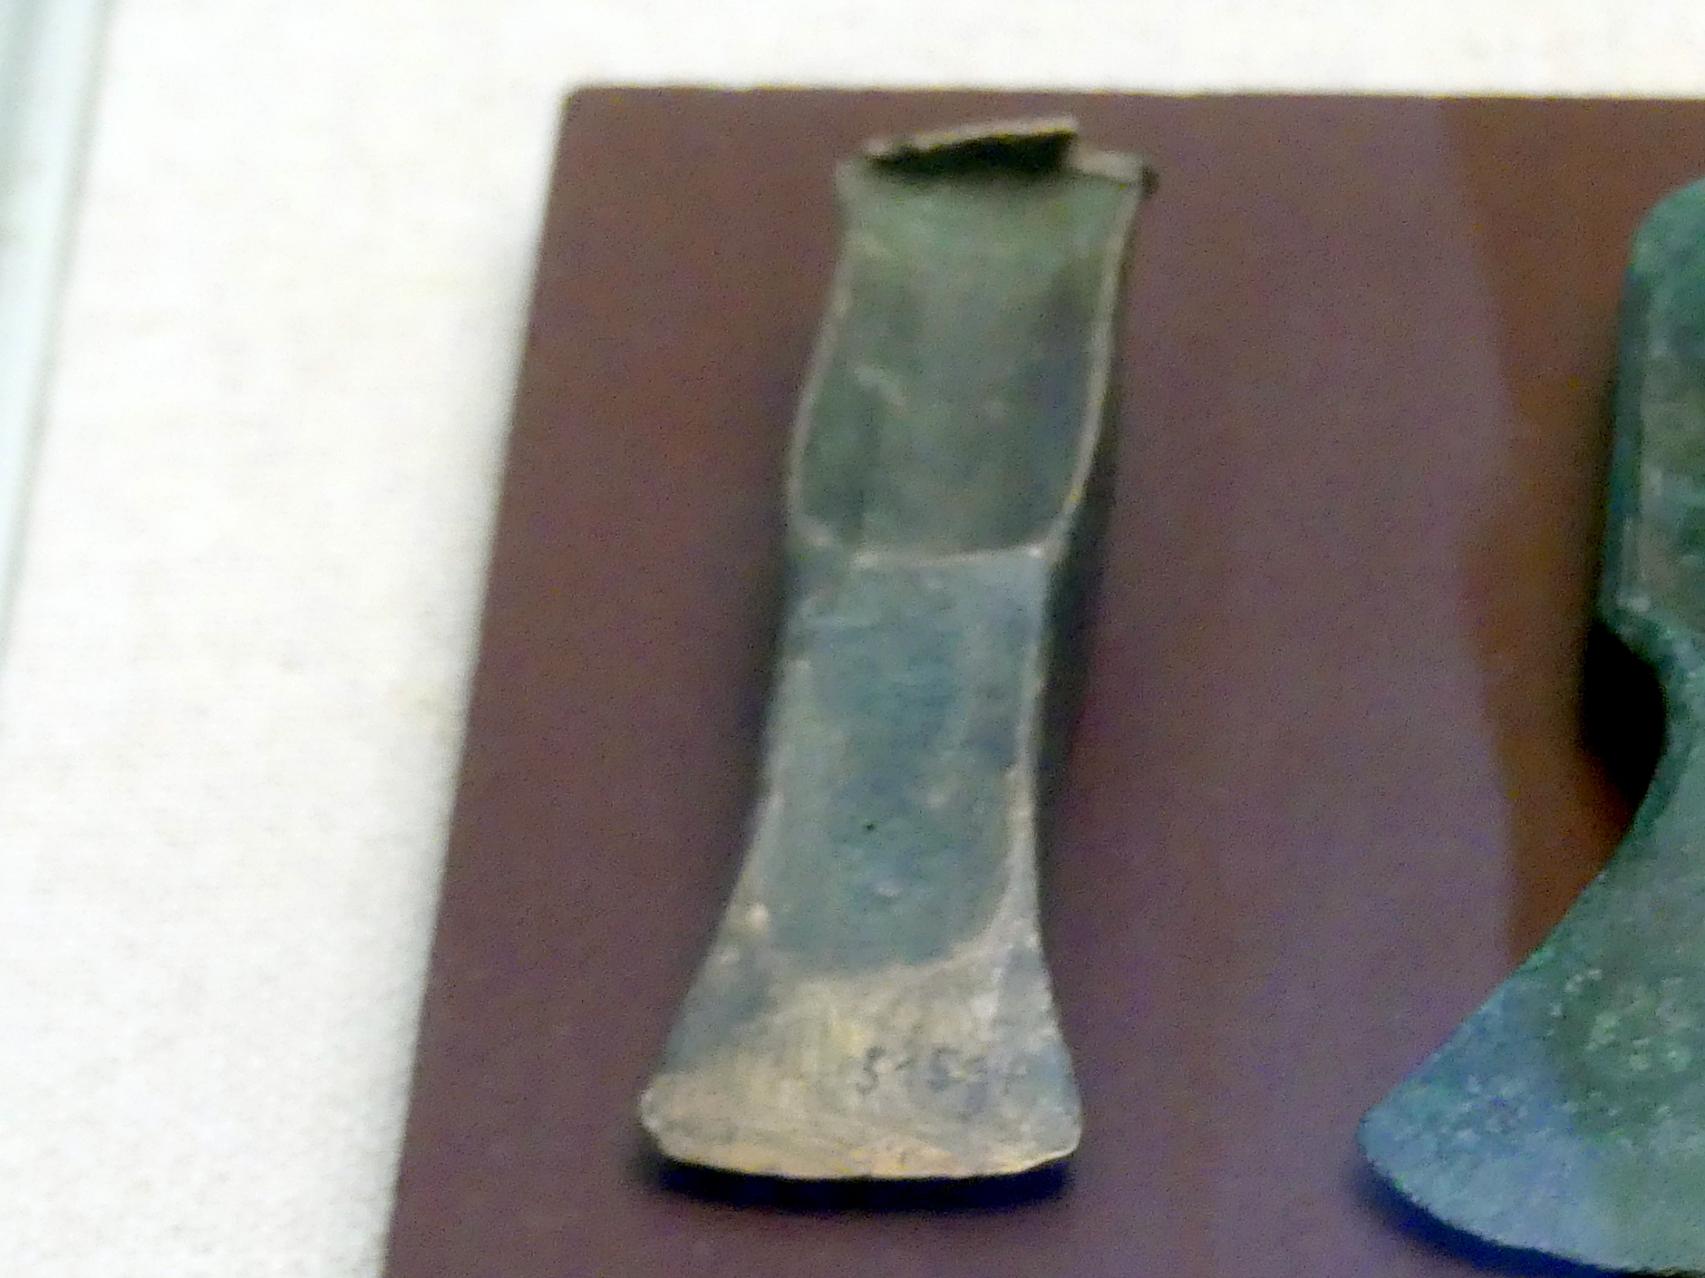 Absatzbeil, Mittlere Bronzezeit, 3000 - 1300 v. Chr., Bild 1/2